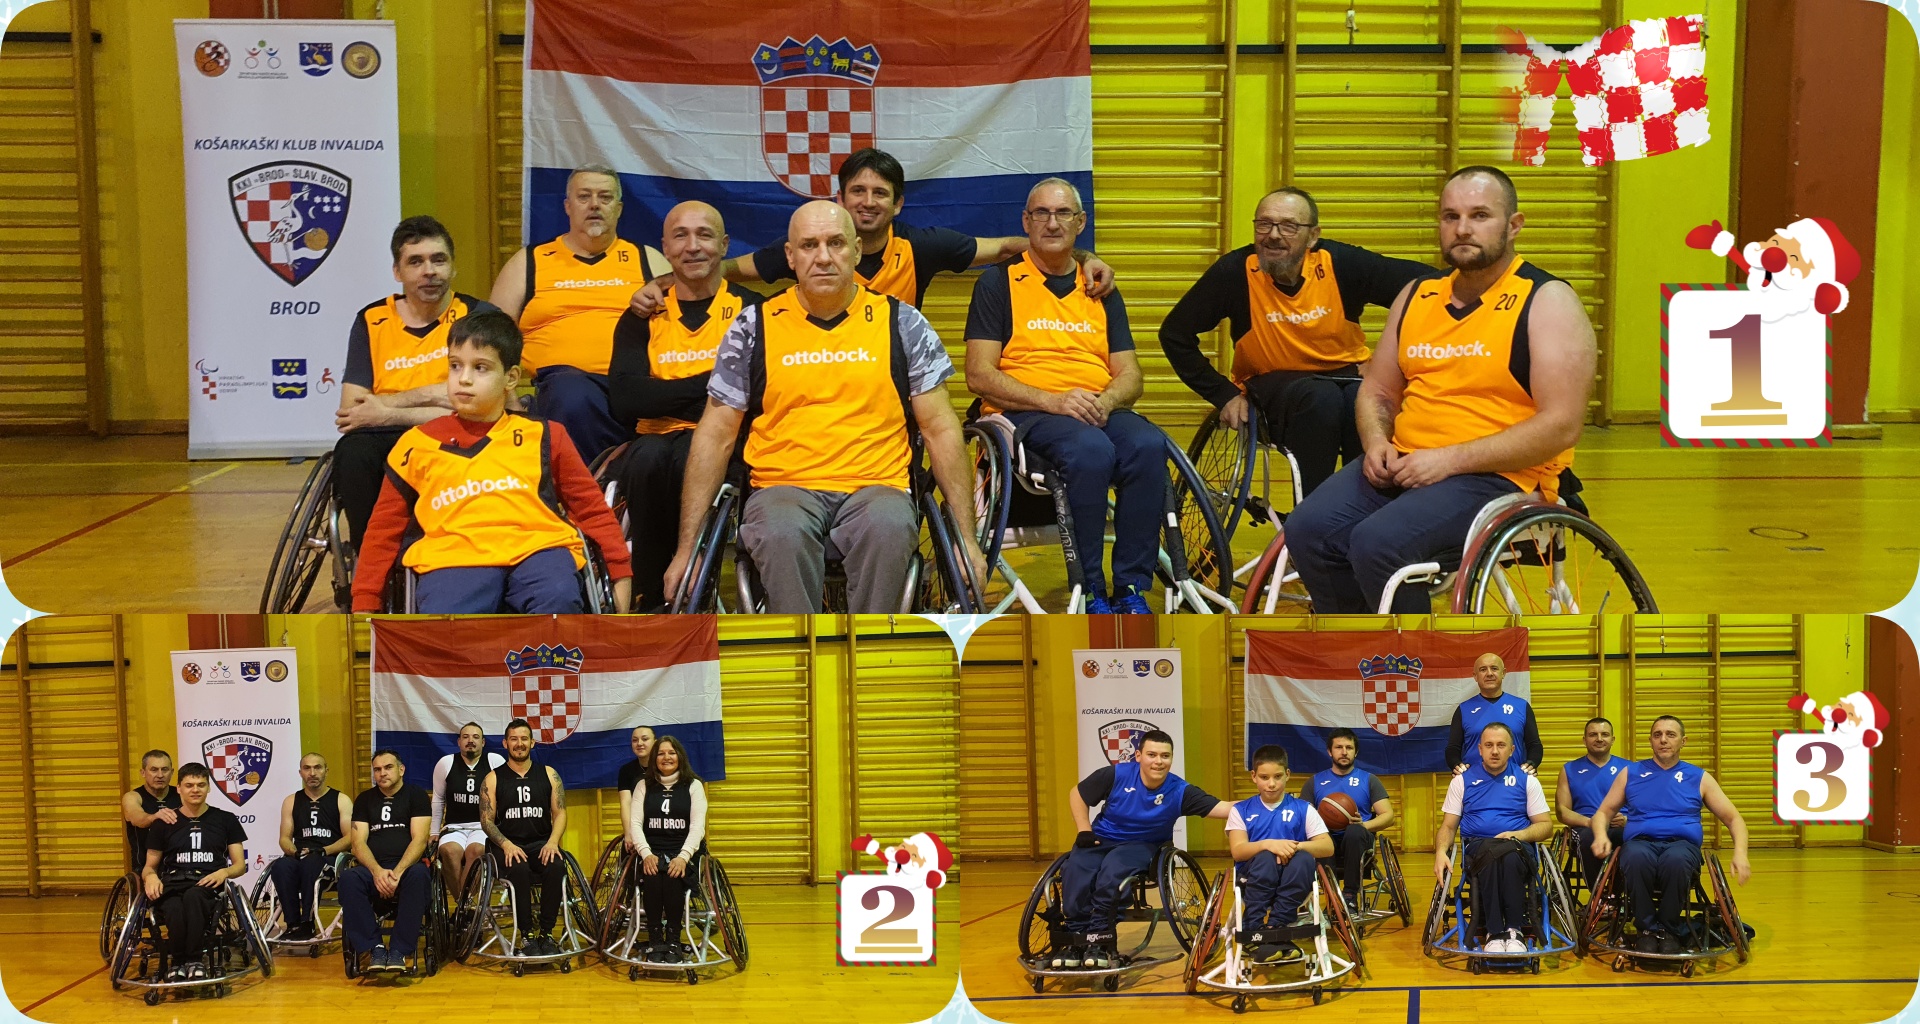 Ova slika prikazuje tri tima igrača u invalidskim kolicima koji su sudjelovali u sportskom događaju. Timovi su fotografirani na drvenom podu, a pozadina sadrži zidove i oznake događaja.